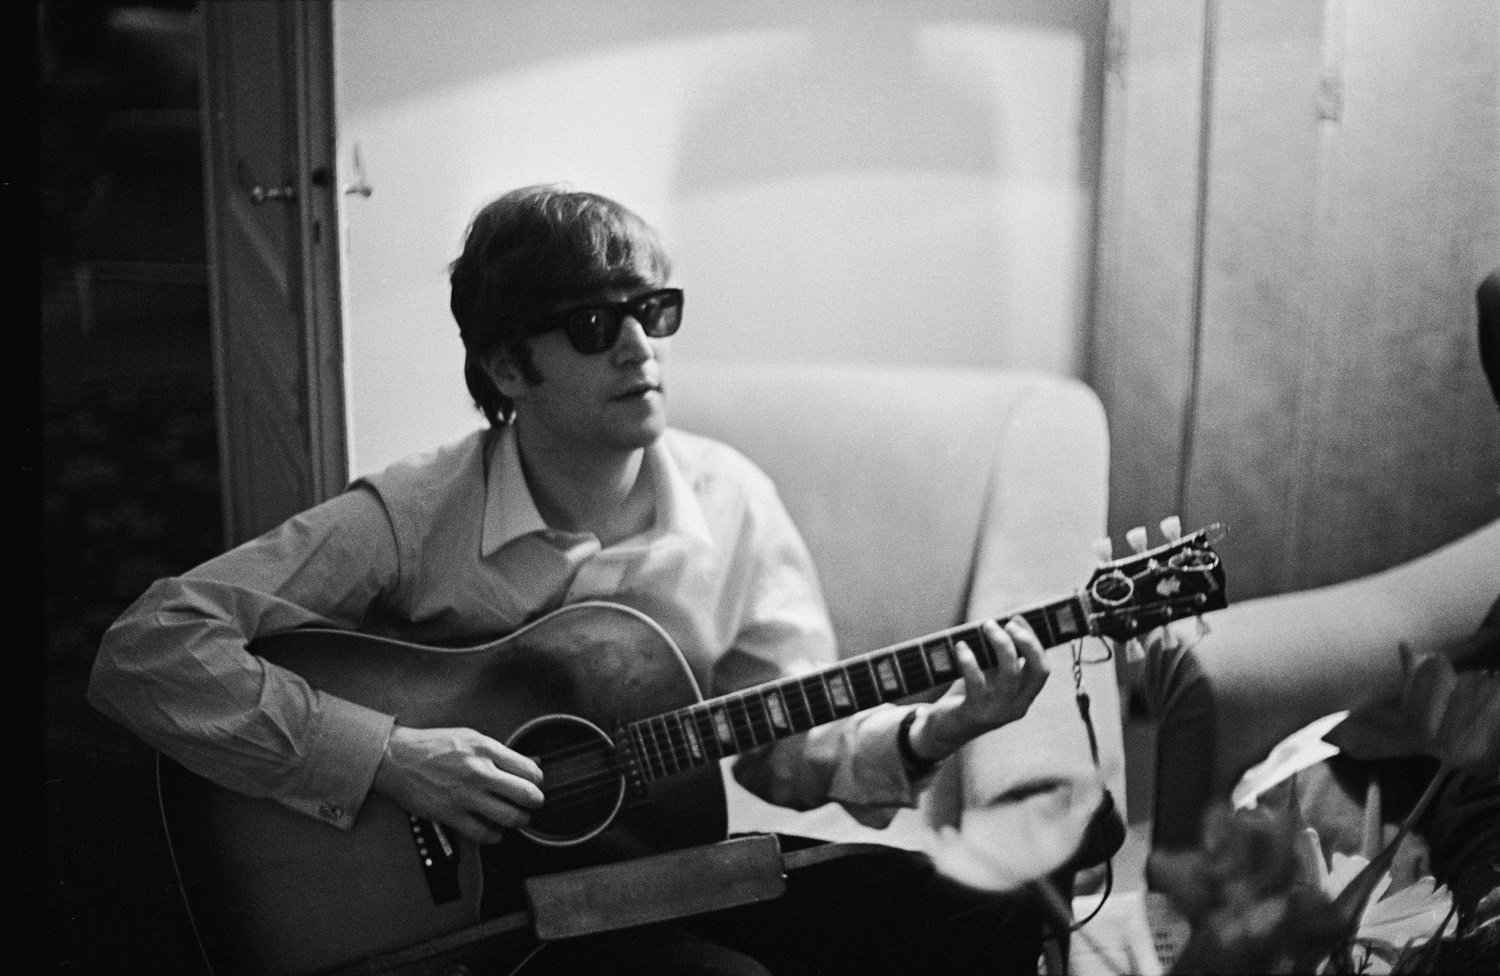 John Lennon of The Beatles